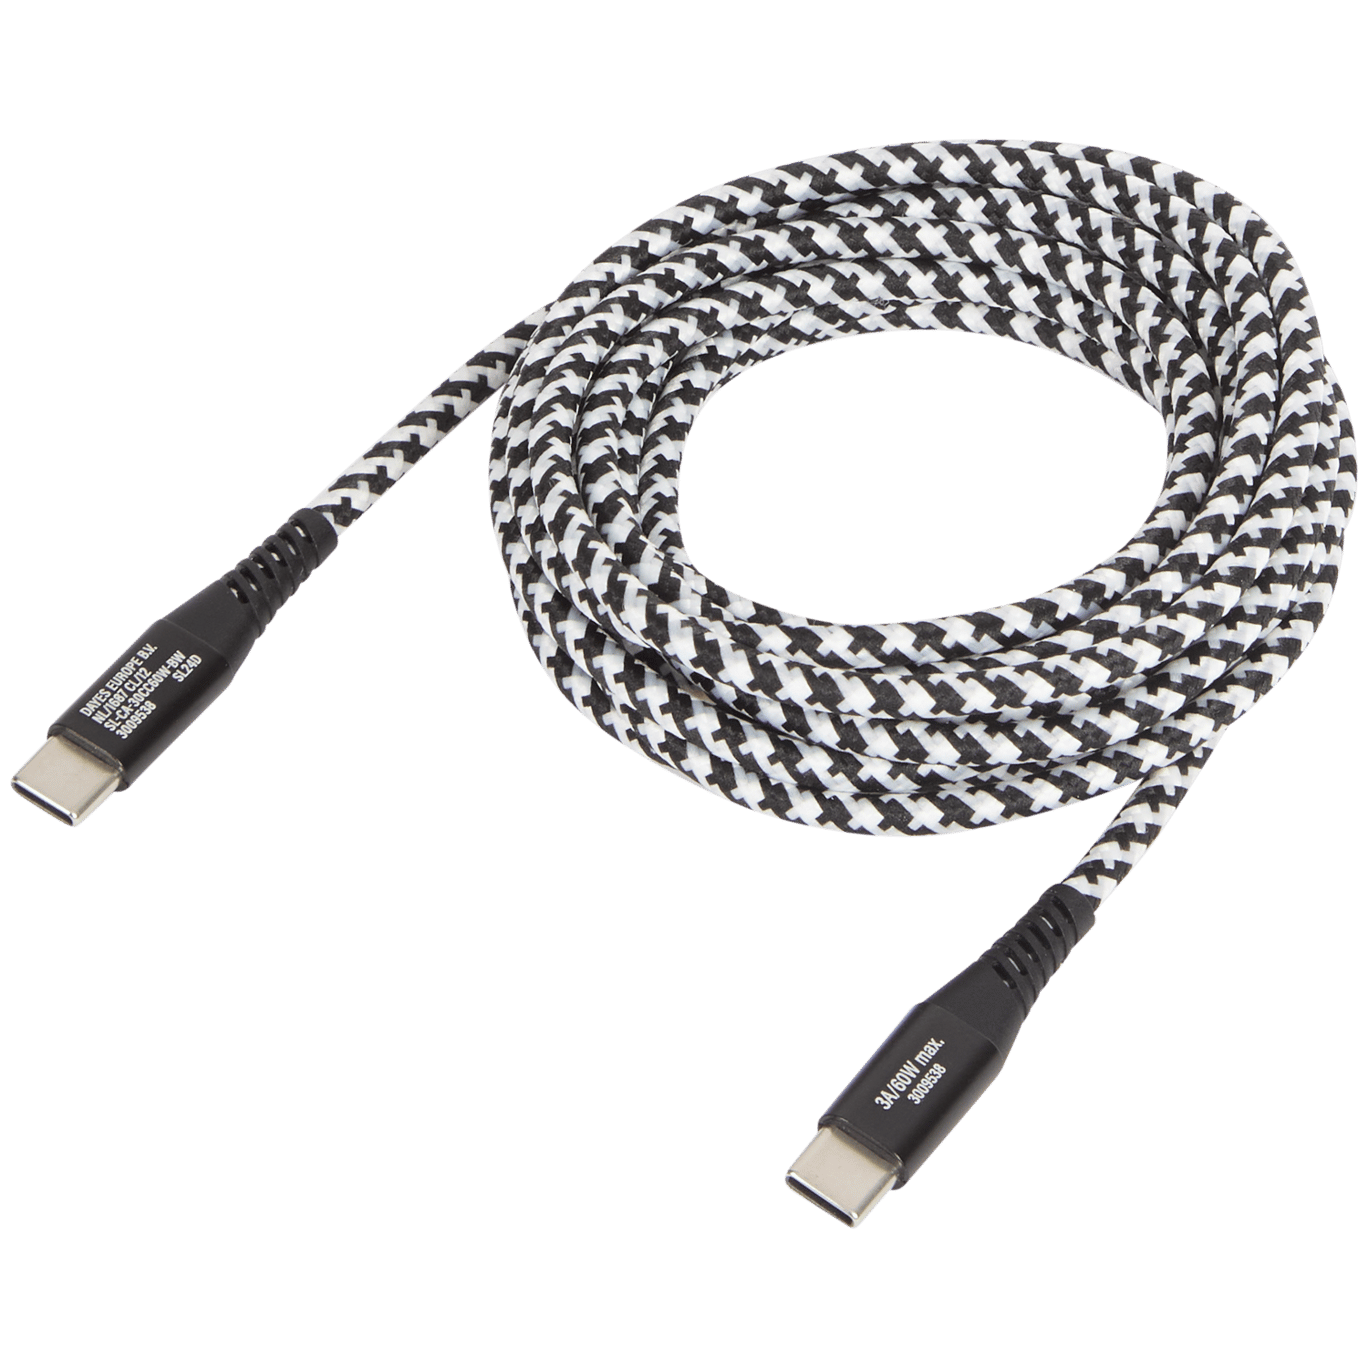 Nabíjecí a datový kabel Sologic USB-C na USB-C